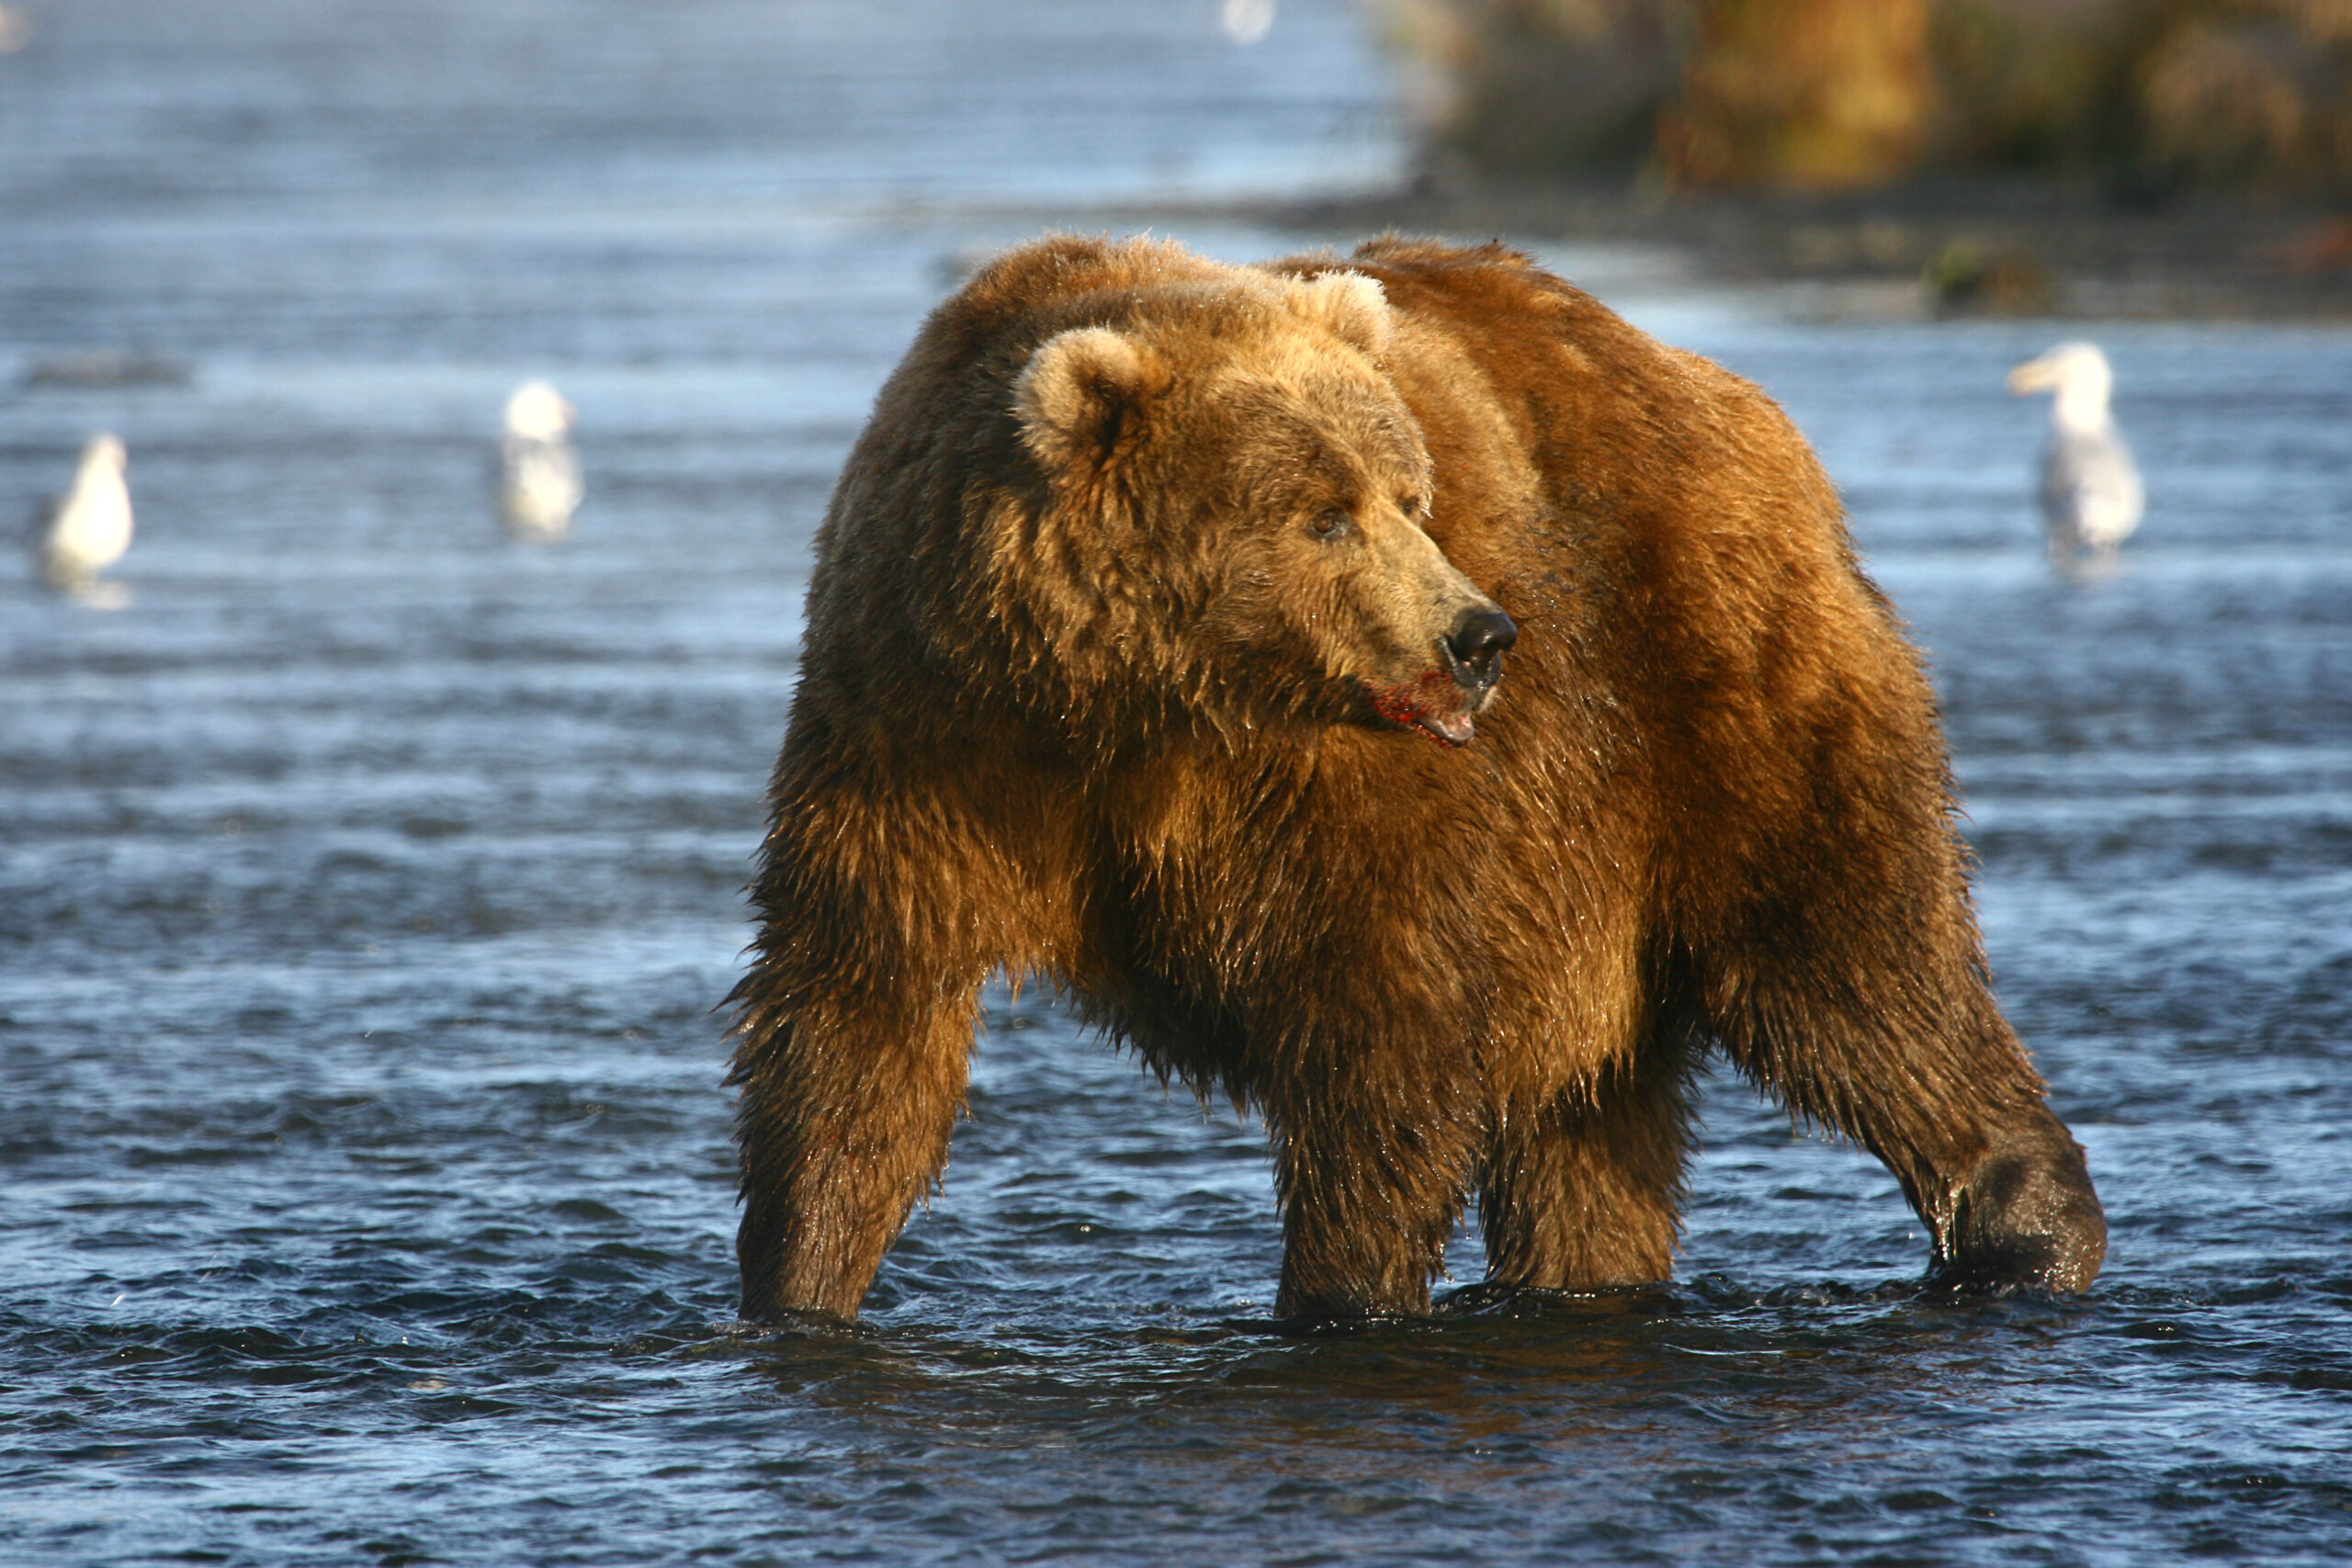 Kodiak bear hunt